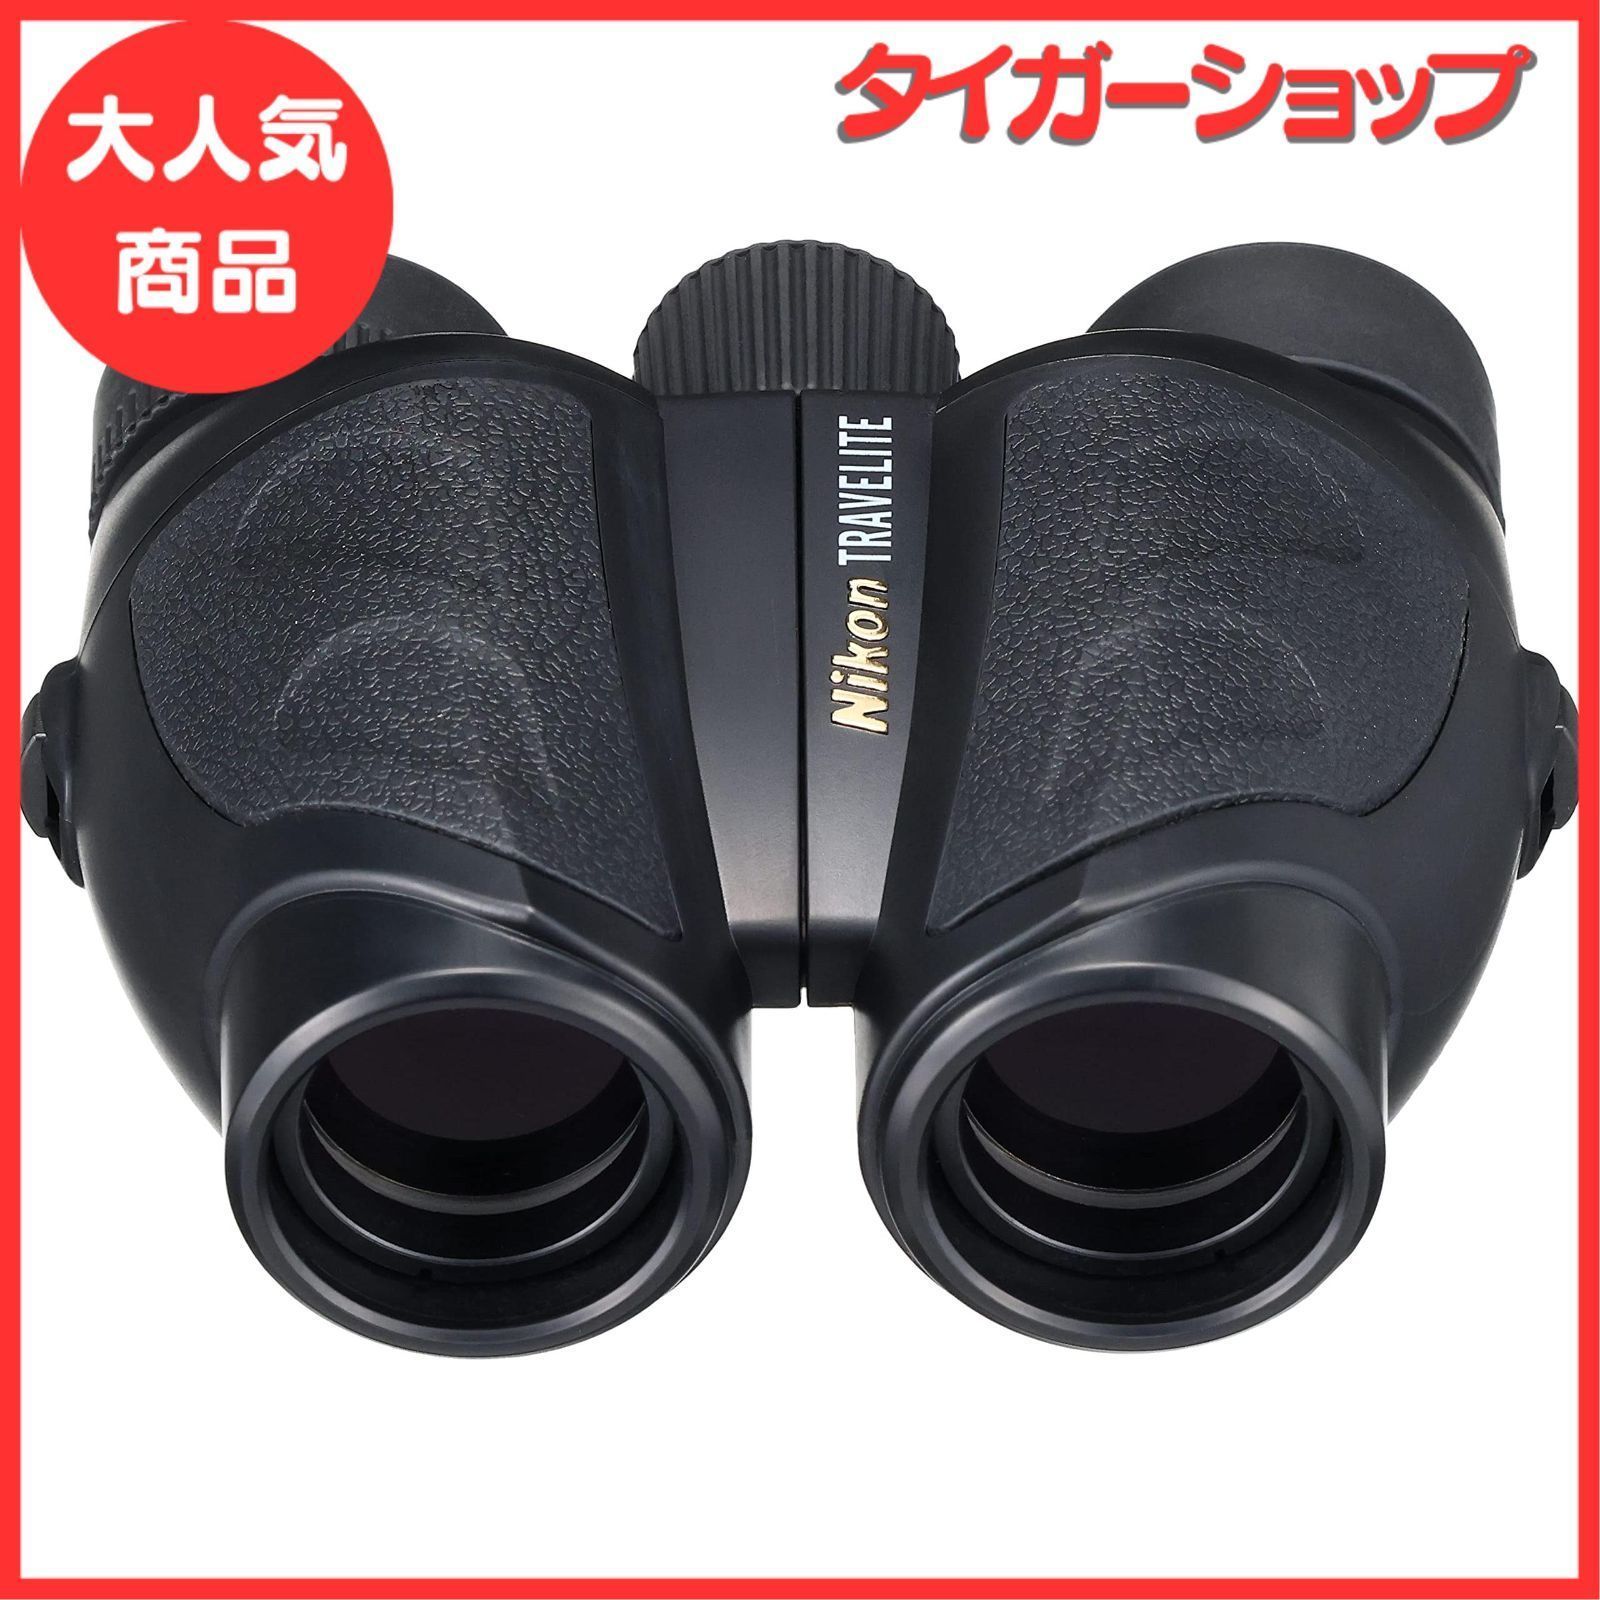 双眼鏡 10倍25口径 光学機器 Nikon トラベライトVI 10x25 ポロプリズム